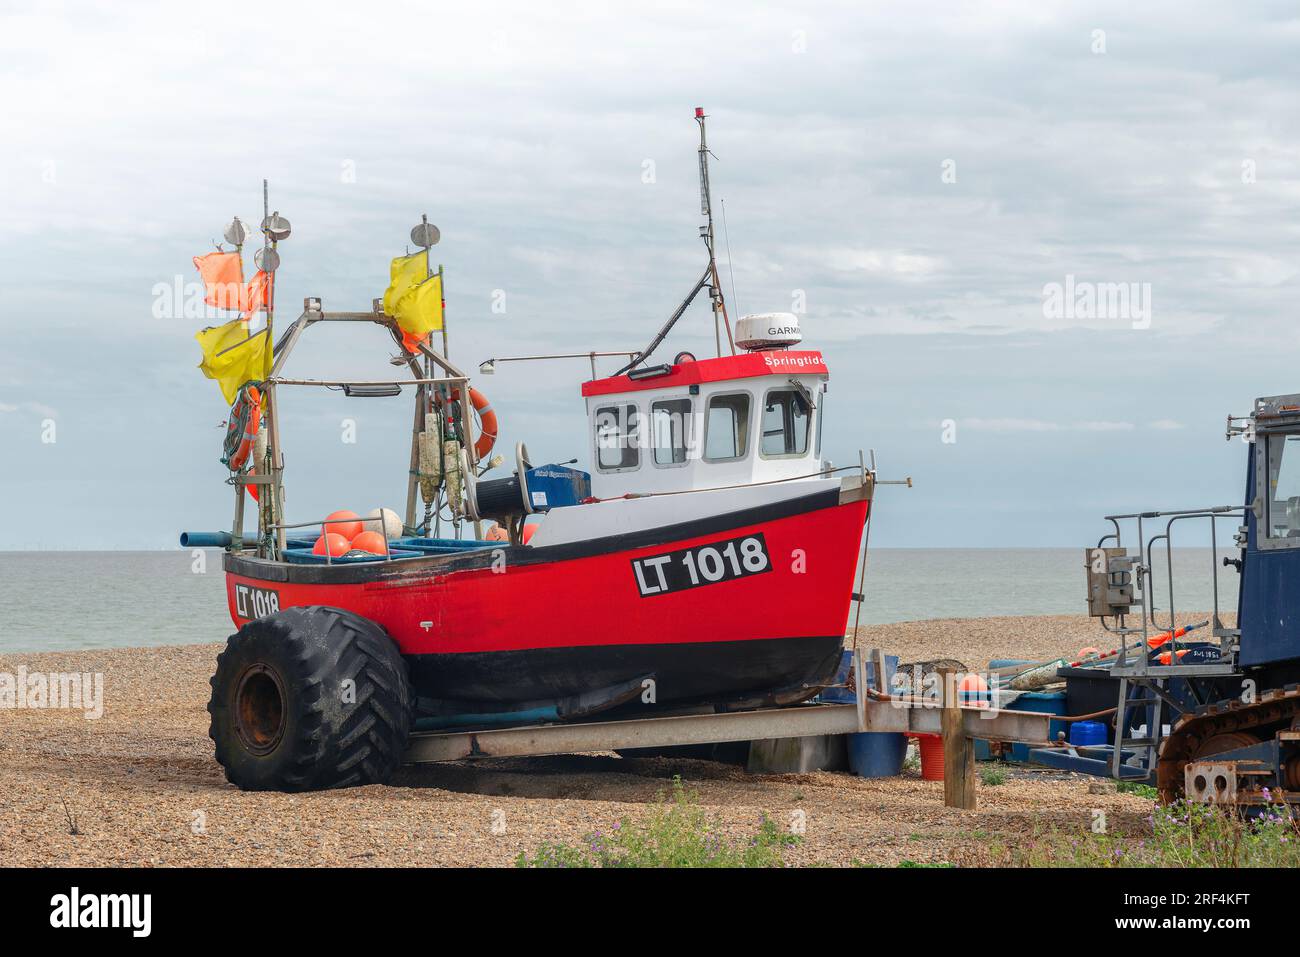 La barca da pesca si è accostata sulla spiaggia di Pepple nella famosa cittadina balneare di Aldeburgh, sulla costa del Suffolk, in Inghilterra Foto Stock